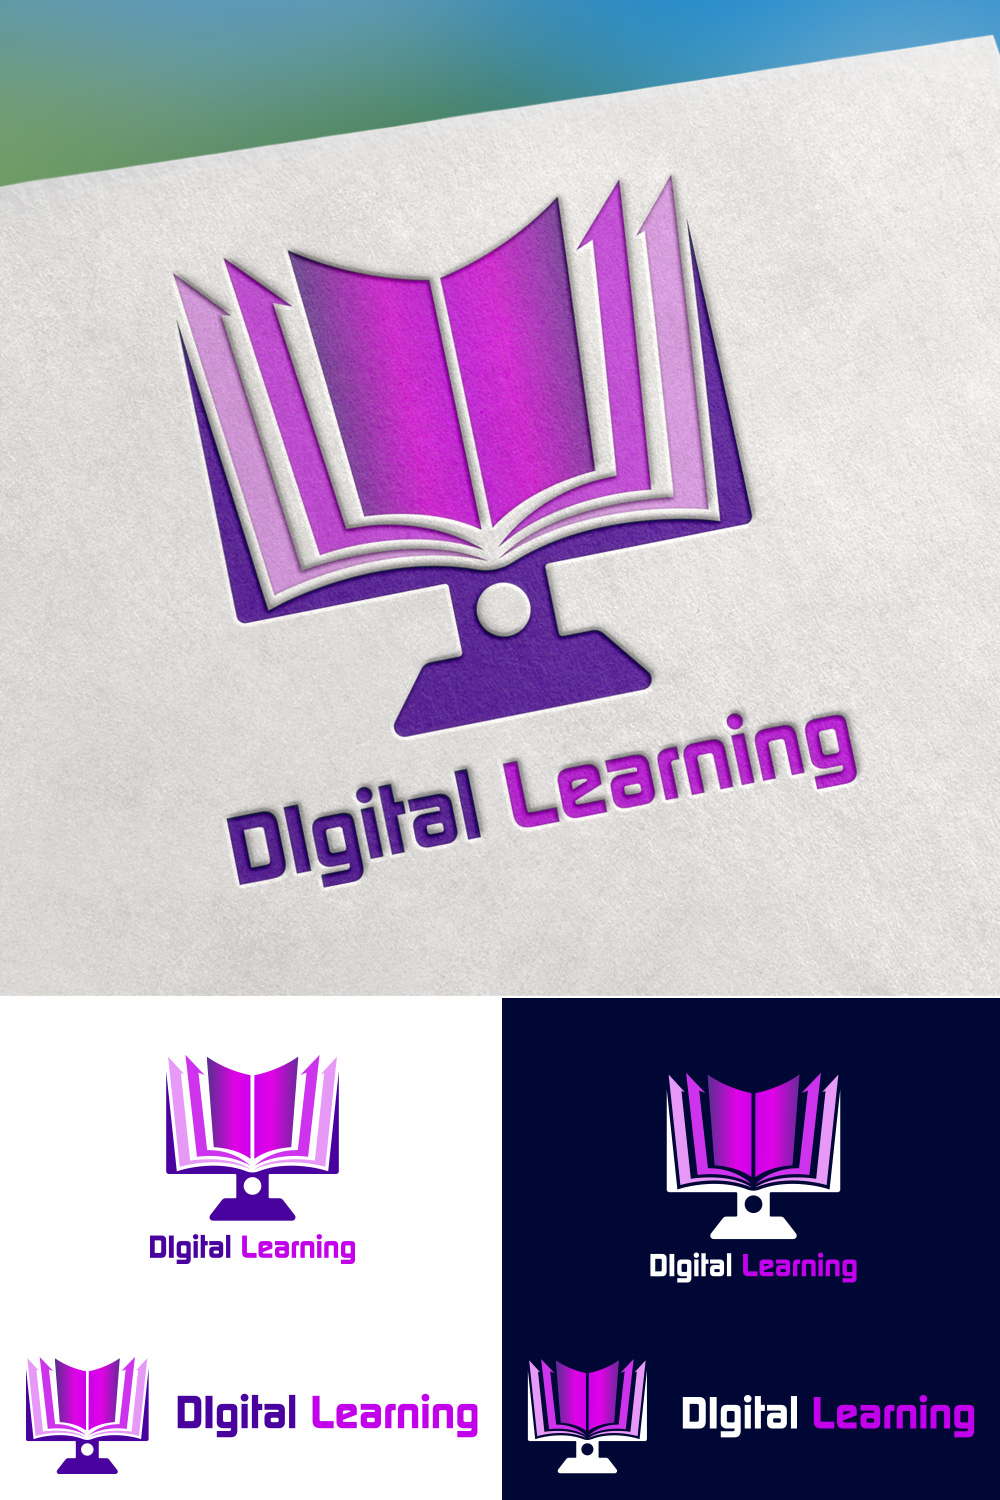 Digital Learning Ebook Logo Design pinterest image.